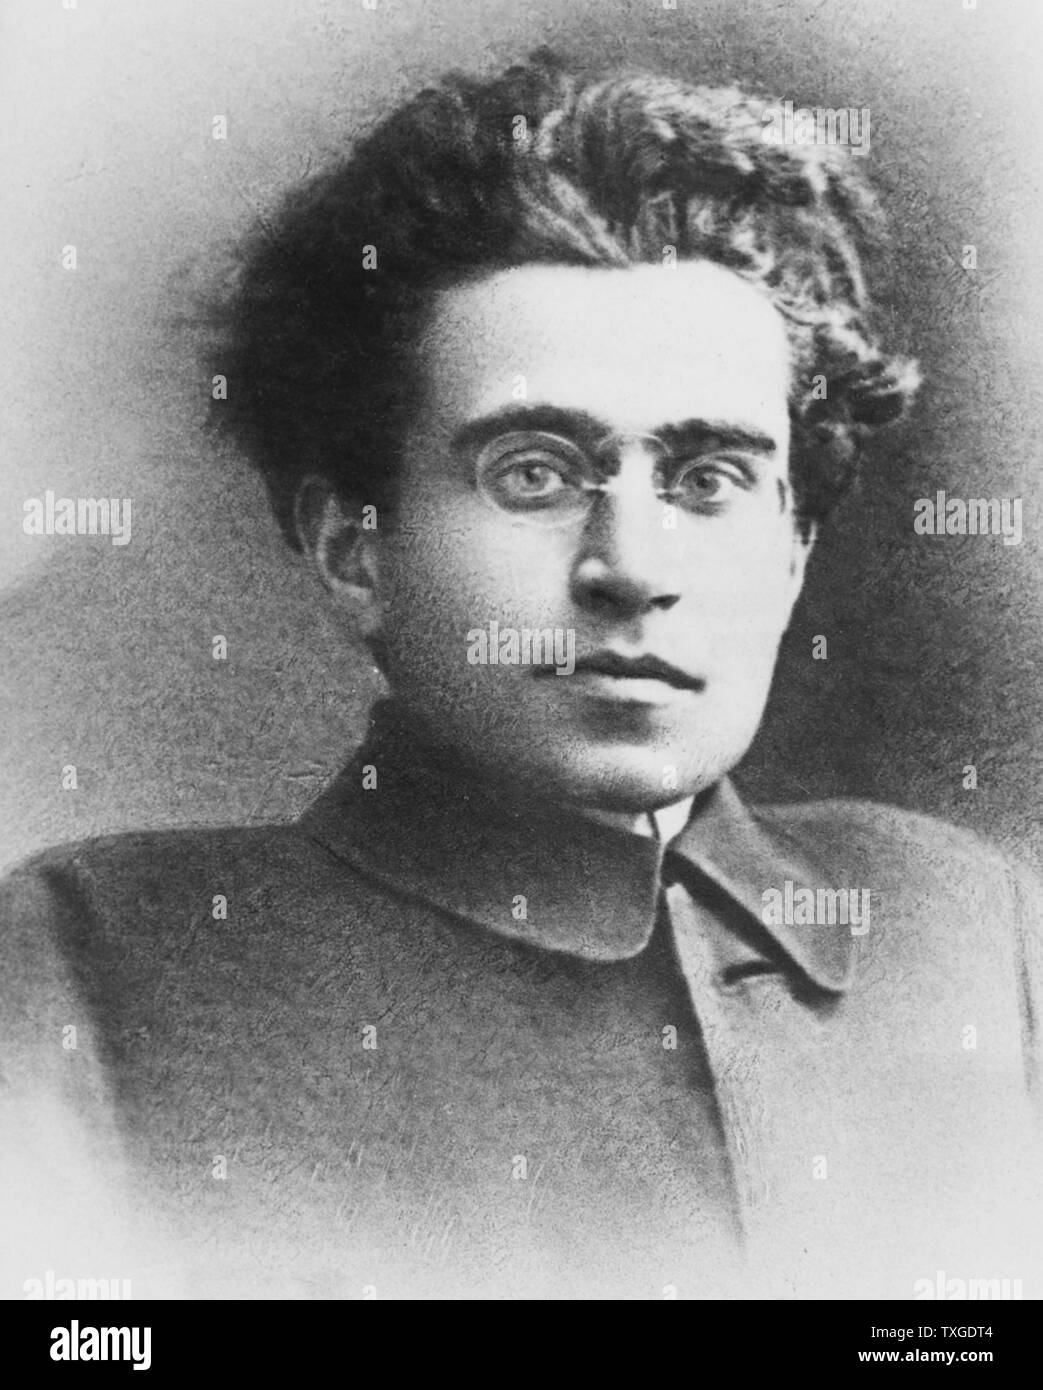 Foto von Antonio Gramsci (1891-1937) italienische marxistische Theoretiker und Politiker. Er schrieb über politische Theorie, Soziologie und Linguistik. Vom Jahre 1935 Stockfoto